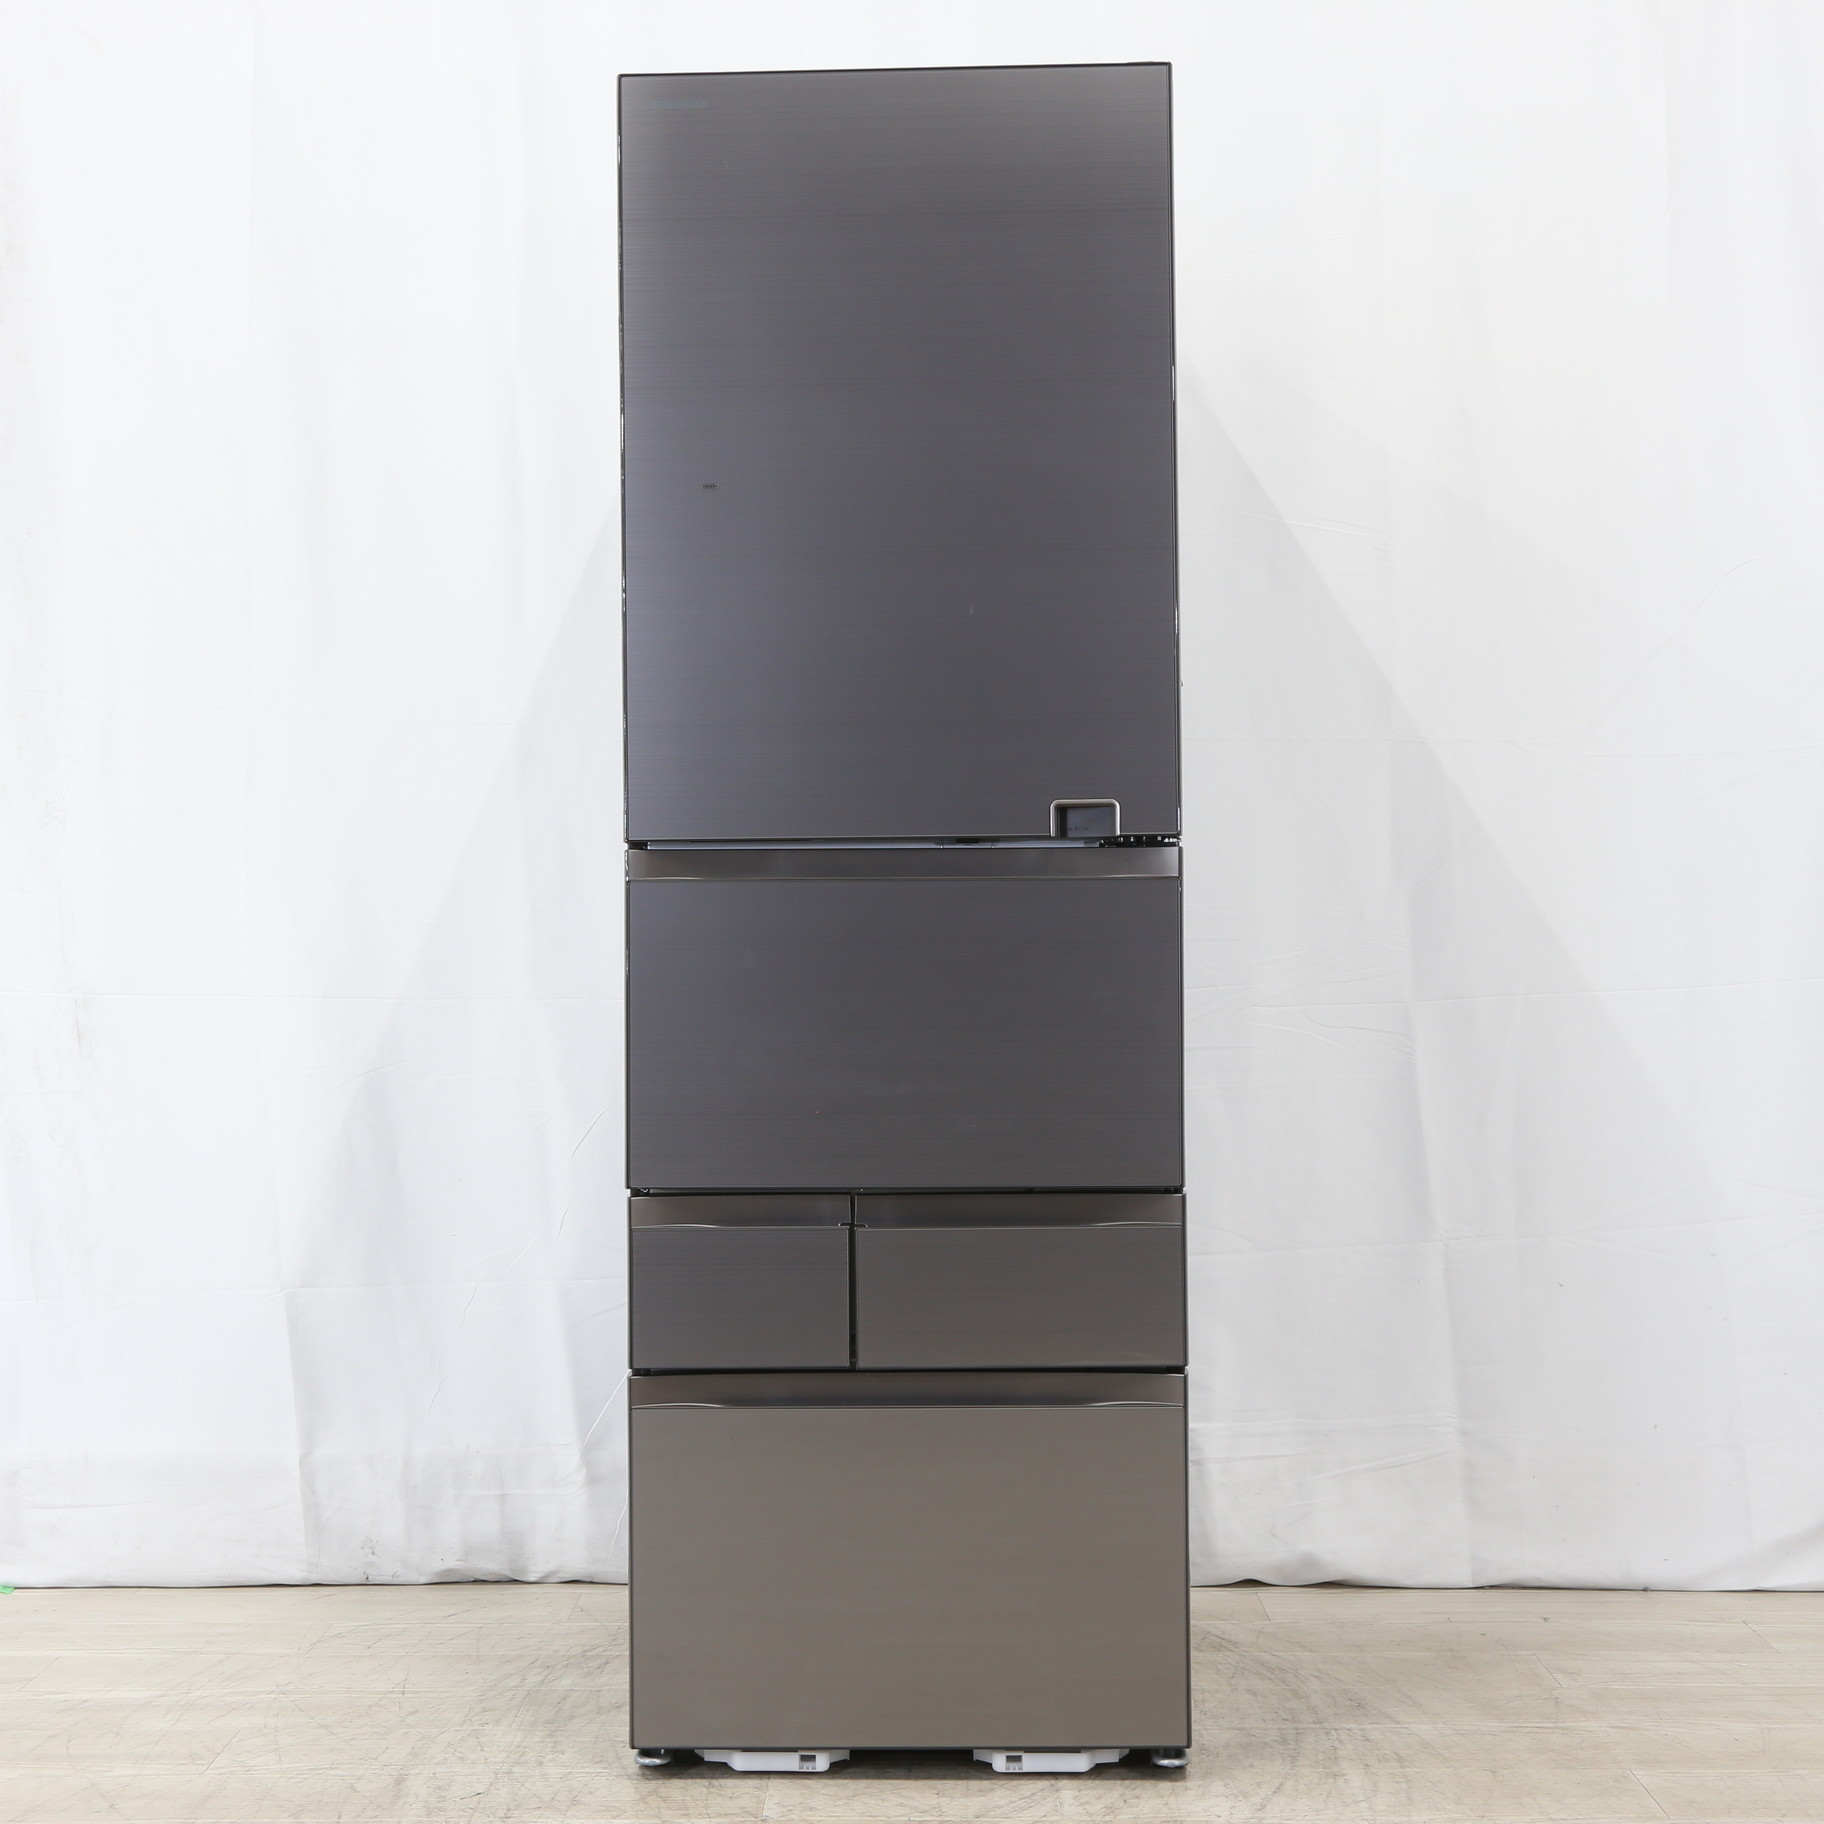 東芝 GR-S500GZ(ZH) 5ドア冷蔵庫(501L・右開き) VEGETA - 冷蔵庫